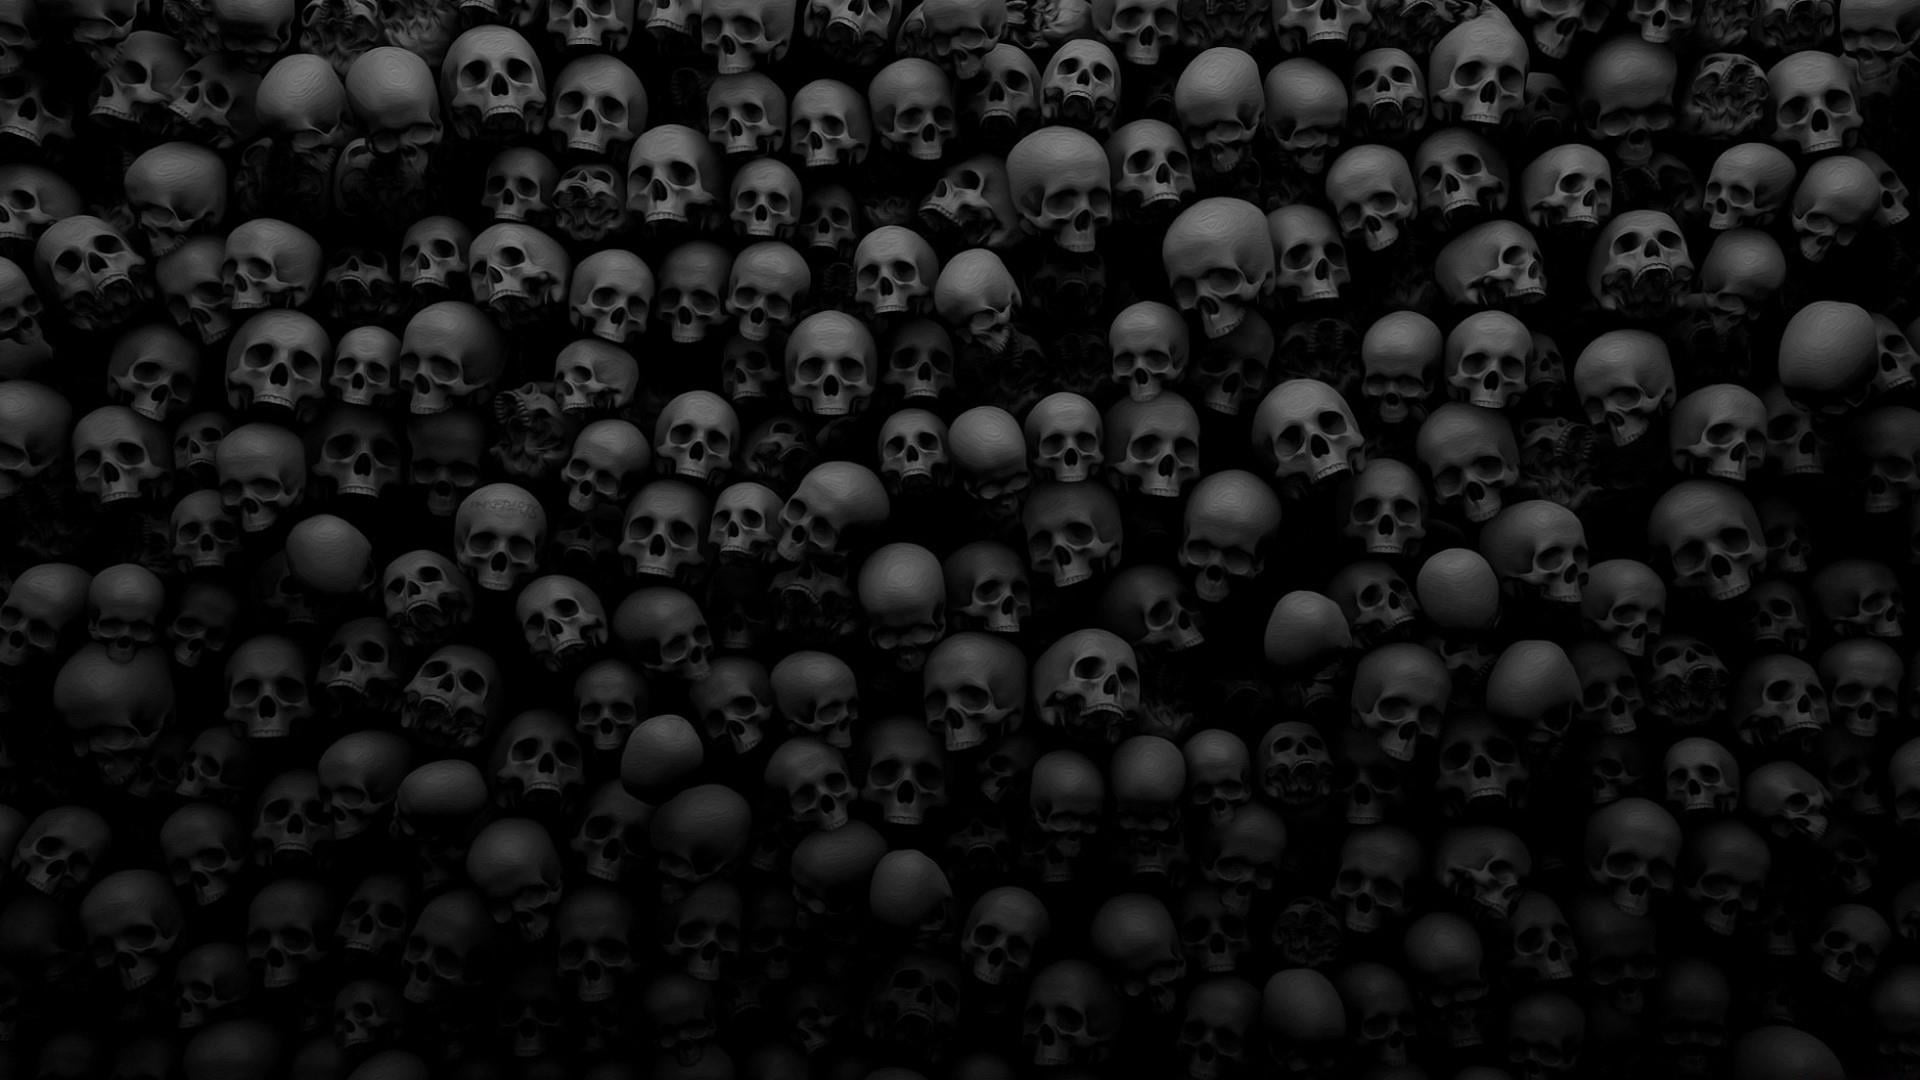 skull, monochrome, dark, darkness, skull art, black and white